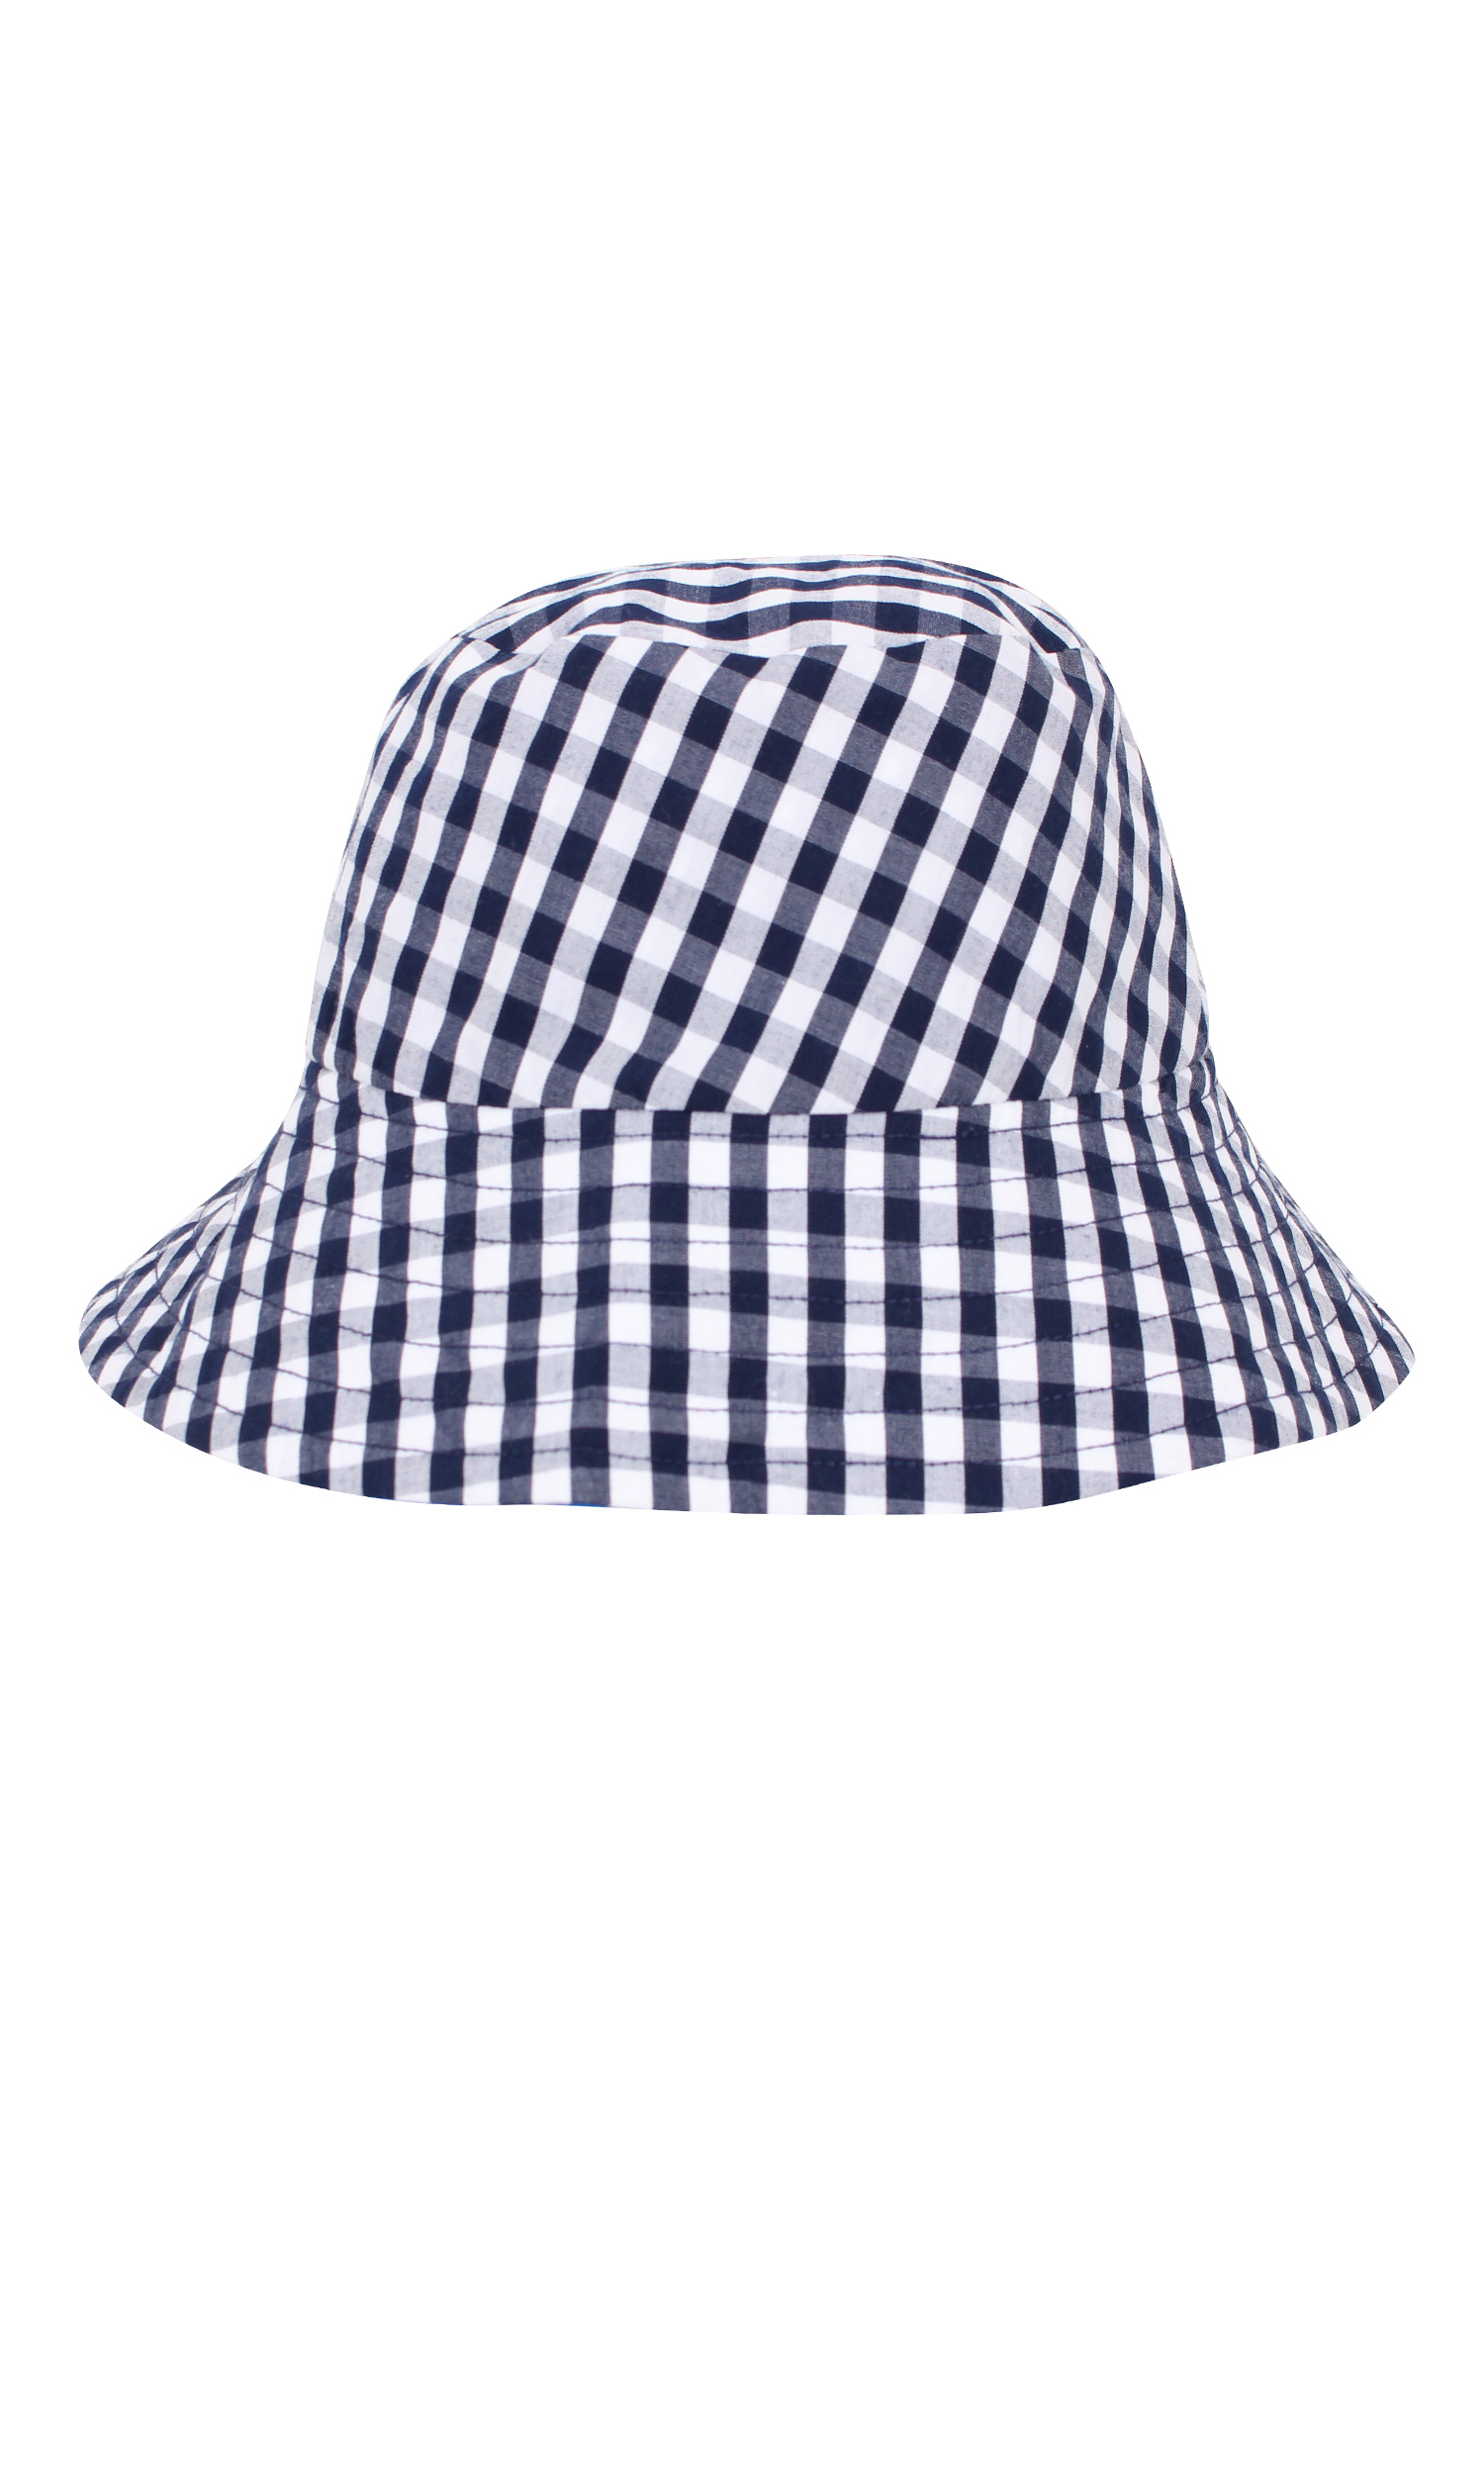 Capri bucket hat, $49 from RUBY